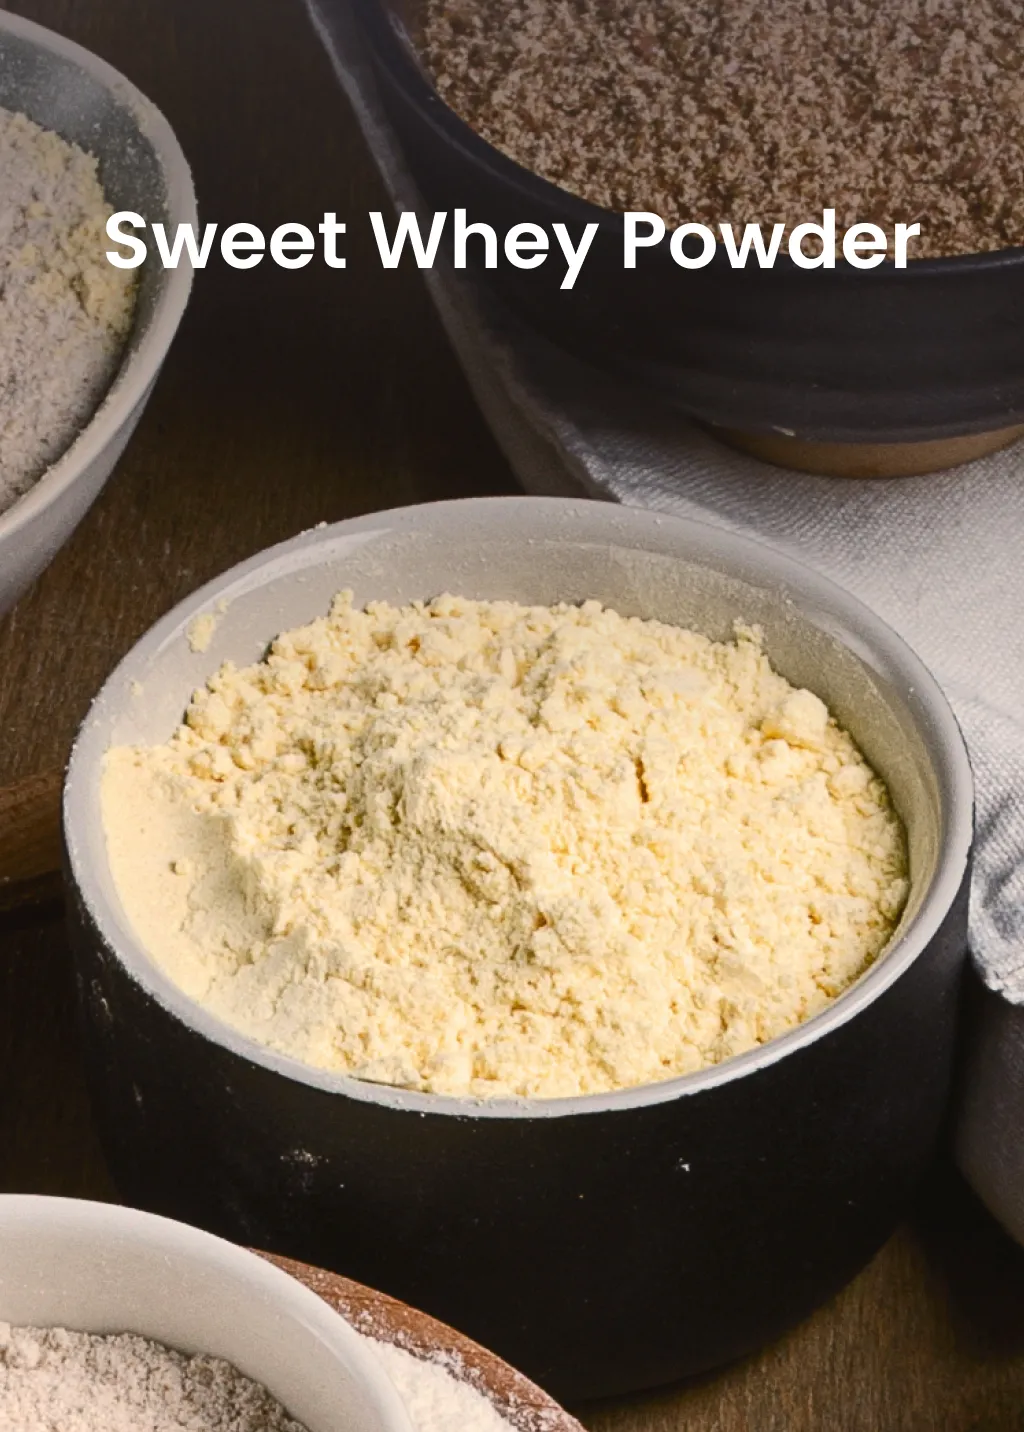 Sweet Whey Powder from Milk Powder Asia